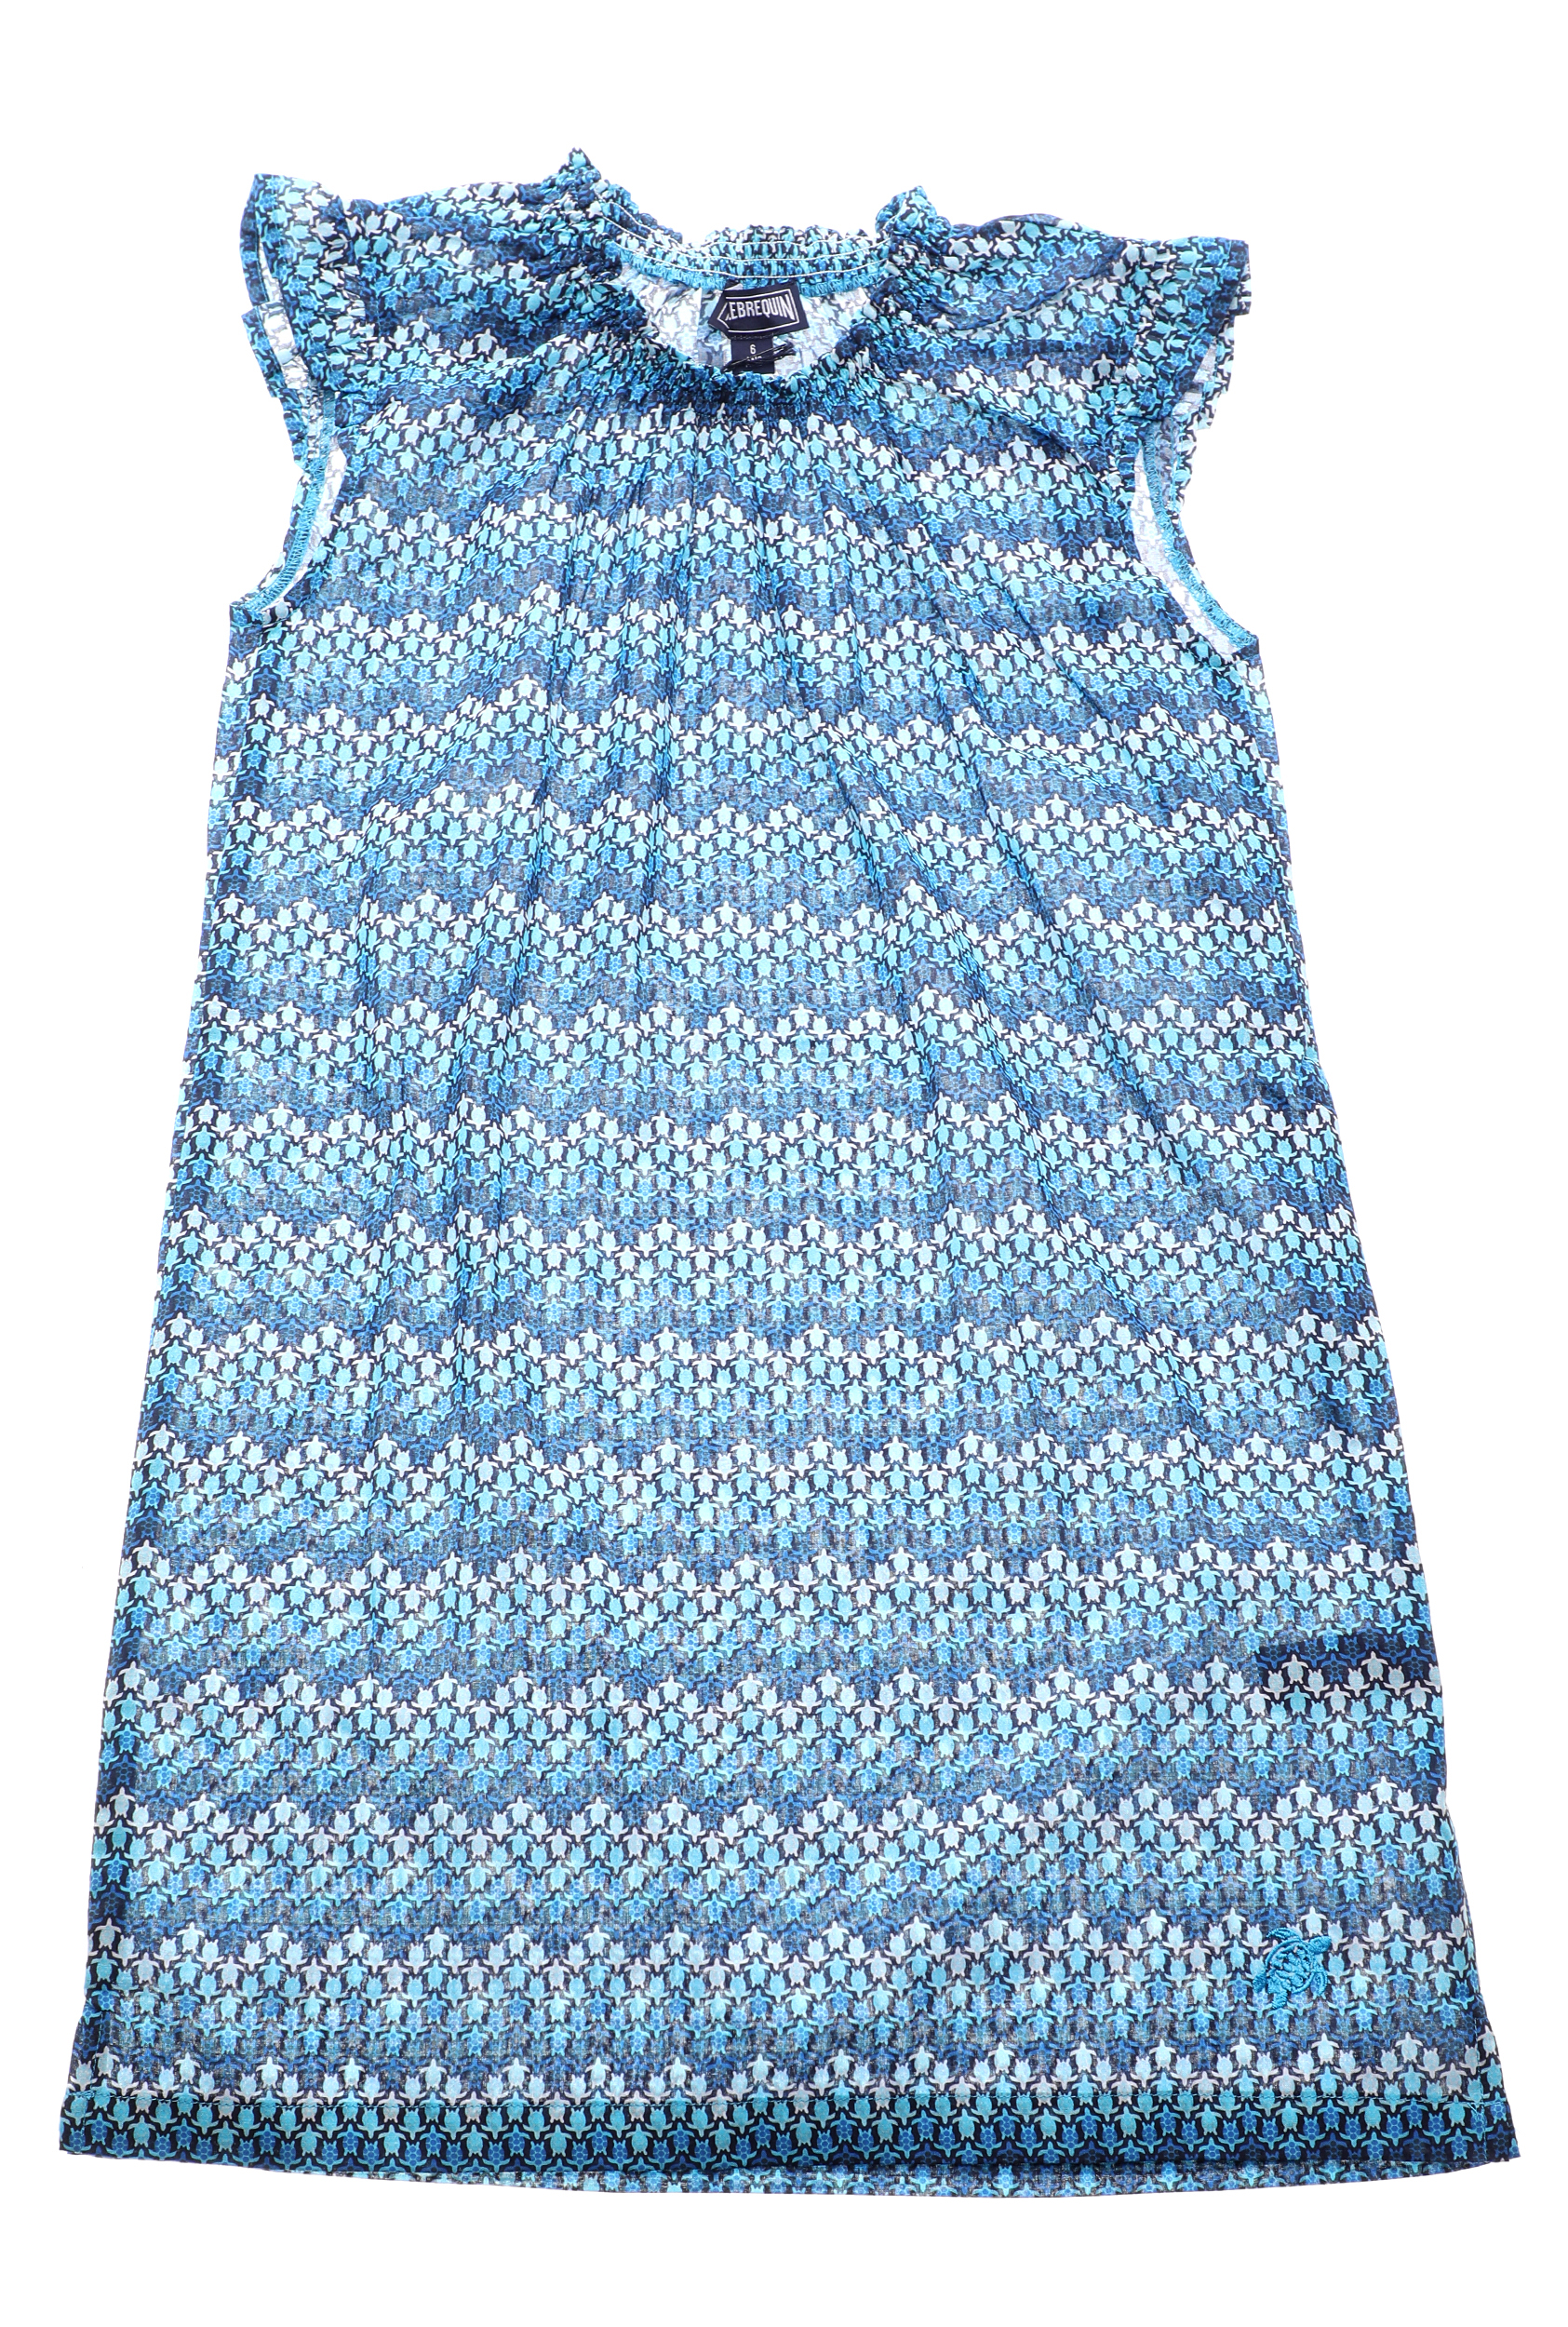 VILEBREQUIN – Παιδικό φόρεμα VILEBREQUIN GAPPY μπλε 1719748.0-0011